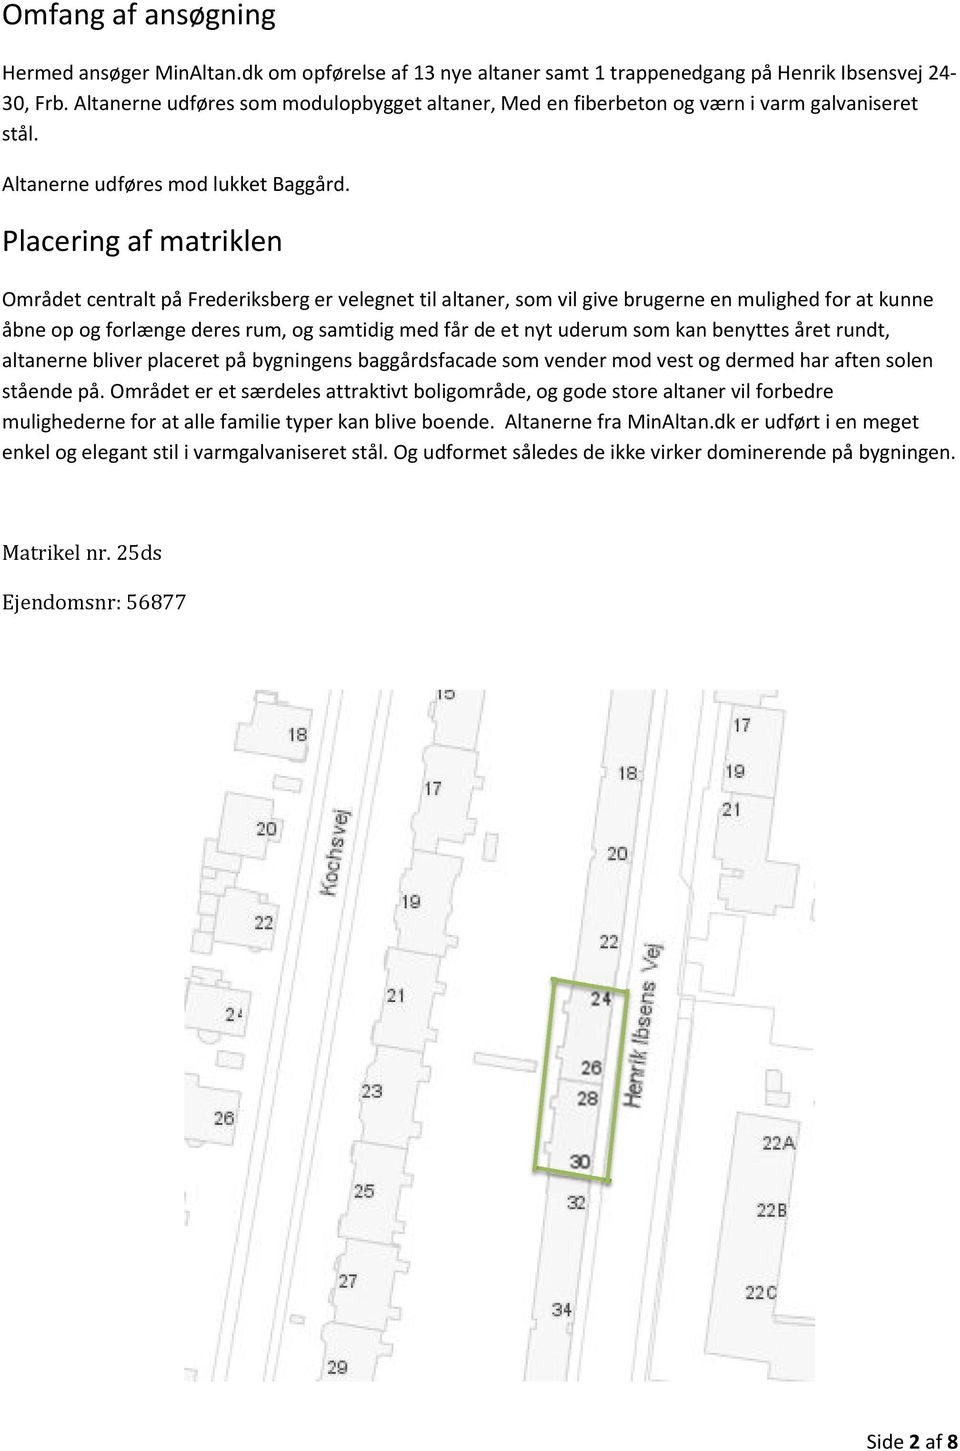 Placering af matriklen Området centralt på Frederiksberg er velegnet til altaner, som vil give brugerne en mulighed for at kunne åbne op og forlænge deres rum, og samtidig med får de et nyt uderum